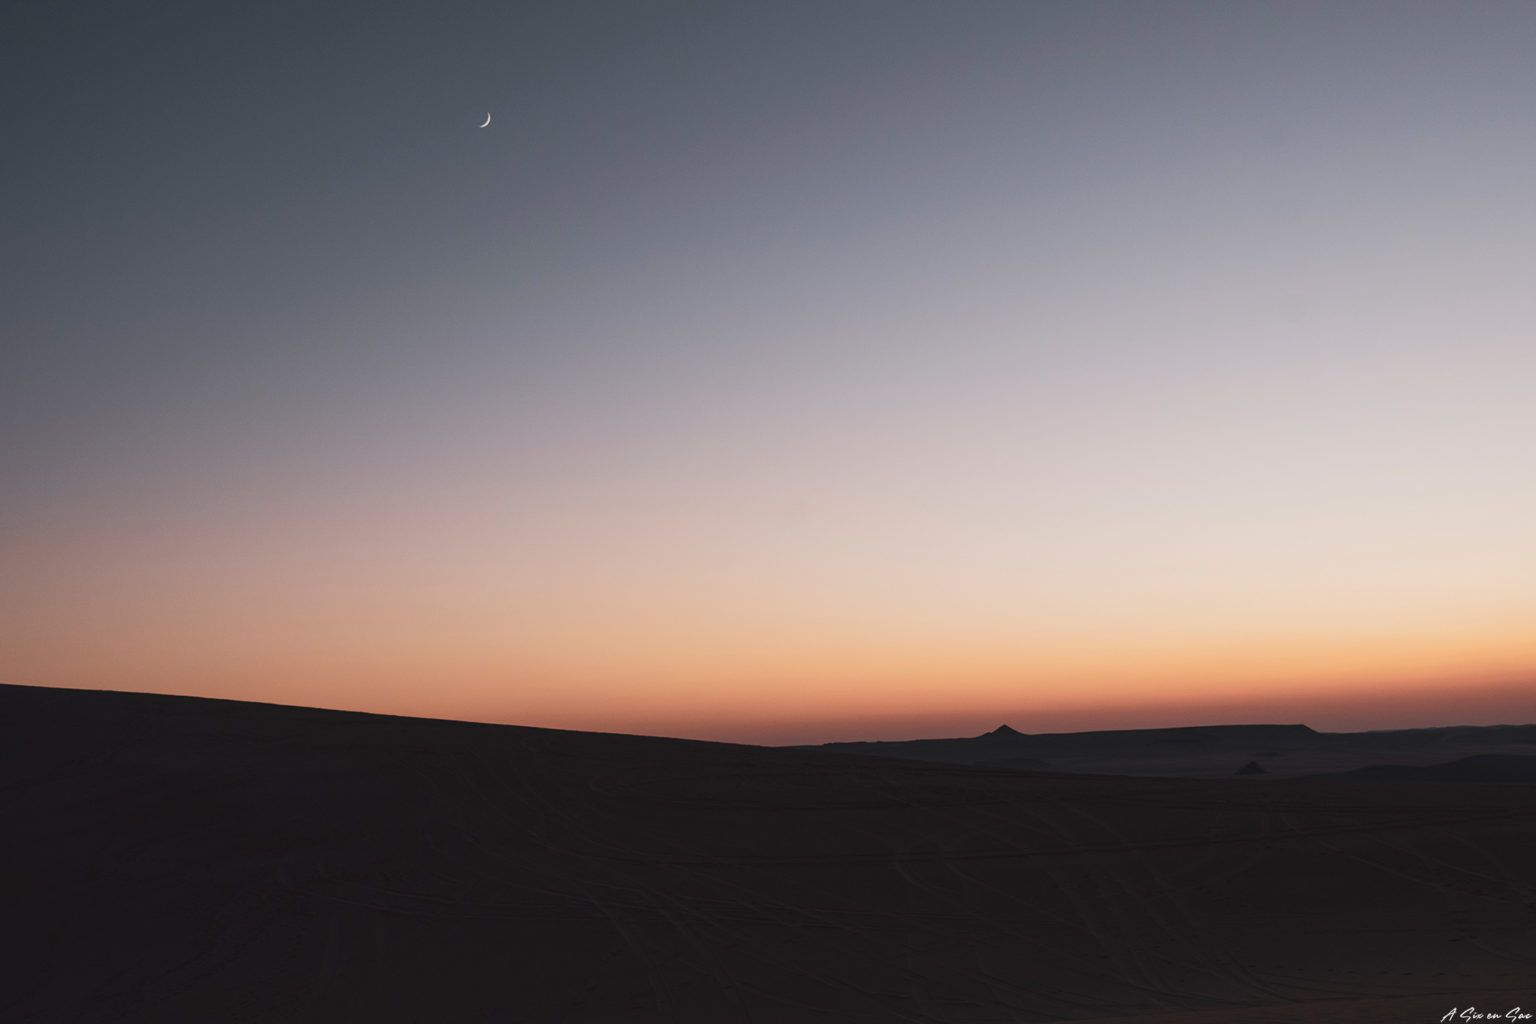 coucher de soleil depuis notre camp improvisé pour prendre le thé dans le désert du Sahara ( excursion à la journée depuis l'oasis deSiwa en Egypte )